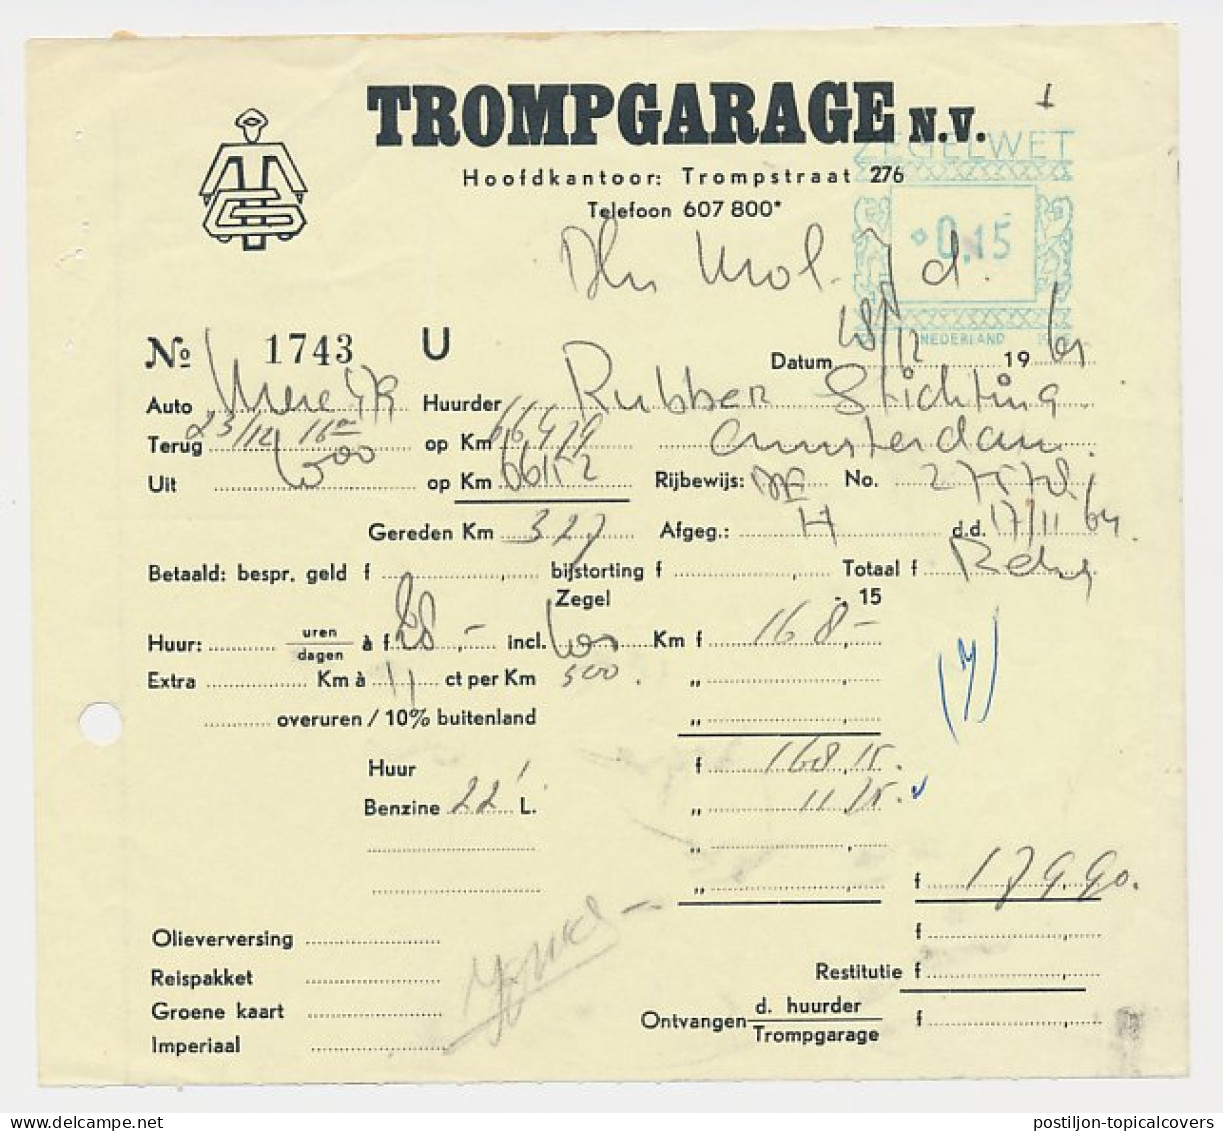 Stempel Zegelwet 1917 - 0.15 Amsterdam 1965 - Steuermarken